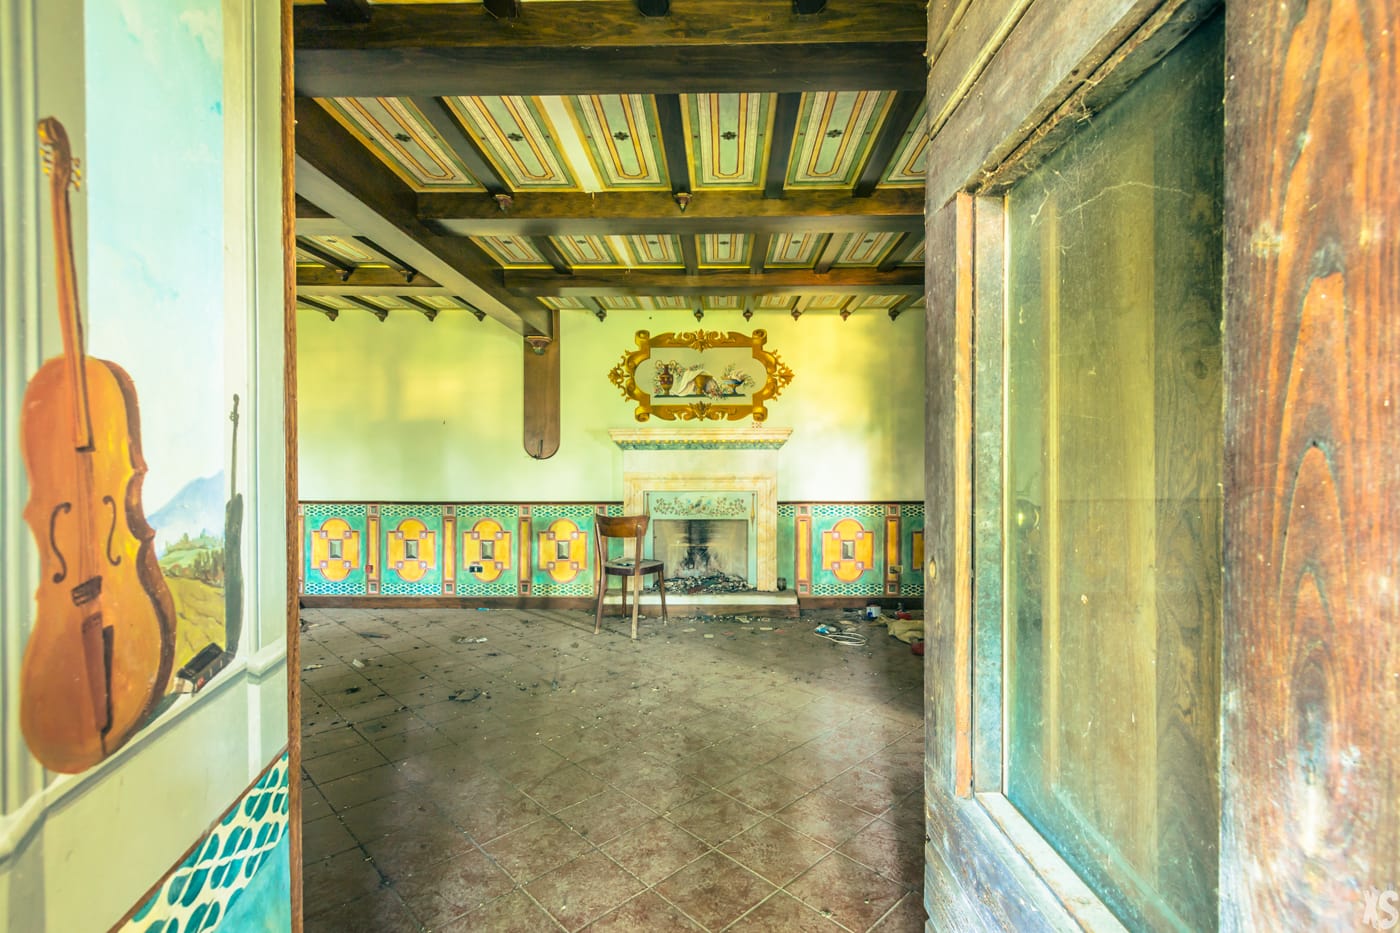 Villa abandonnée située en Italie - Urbex